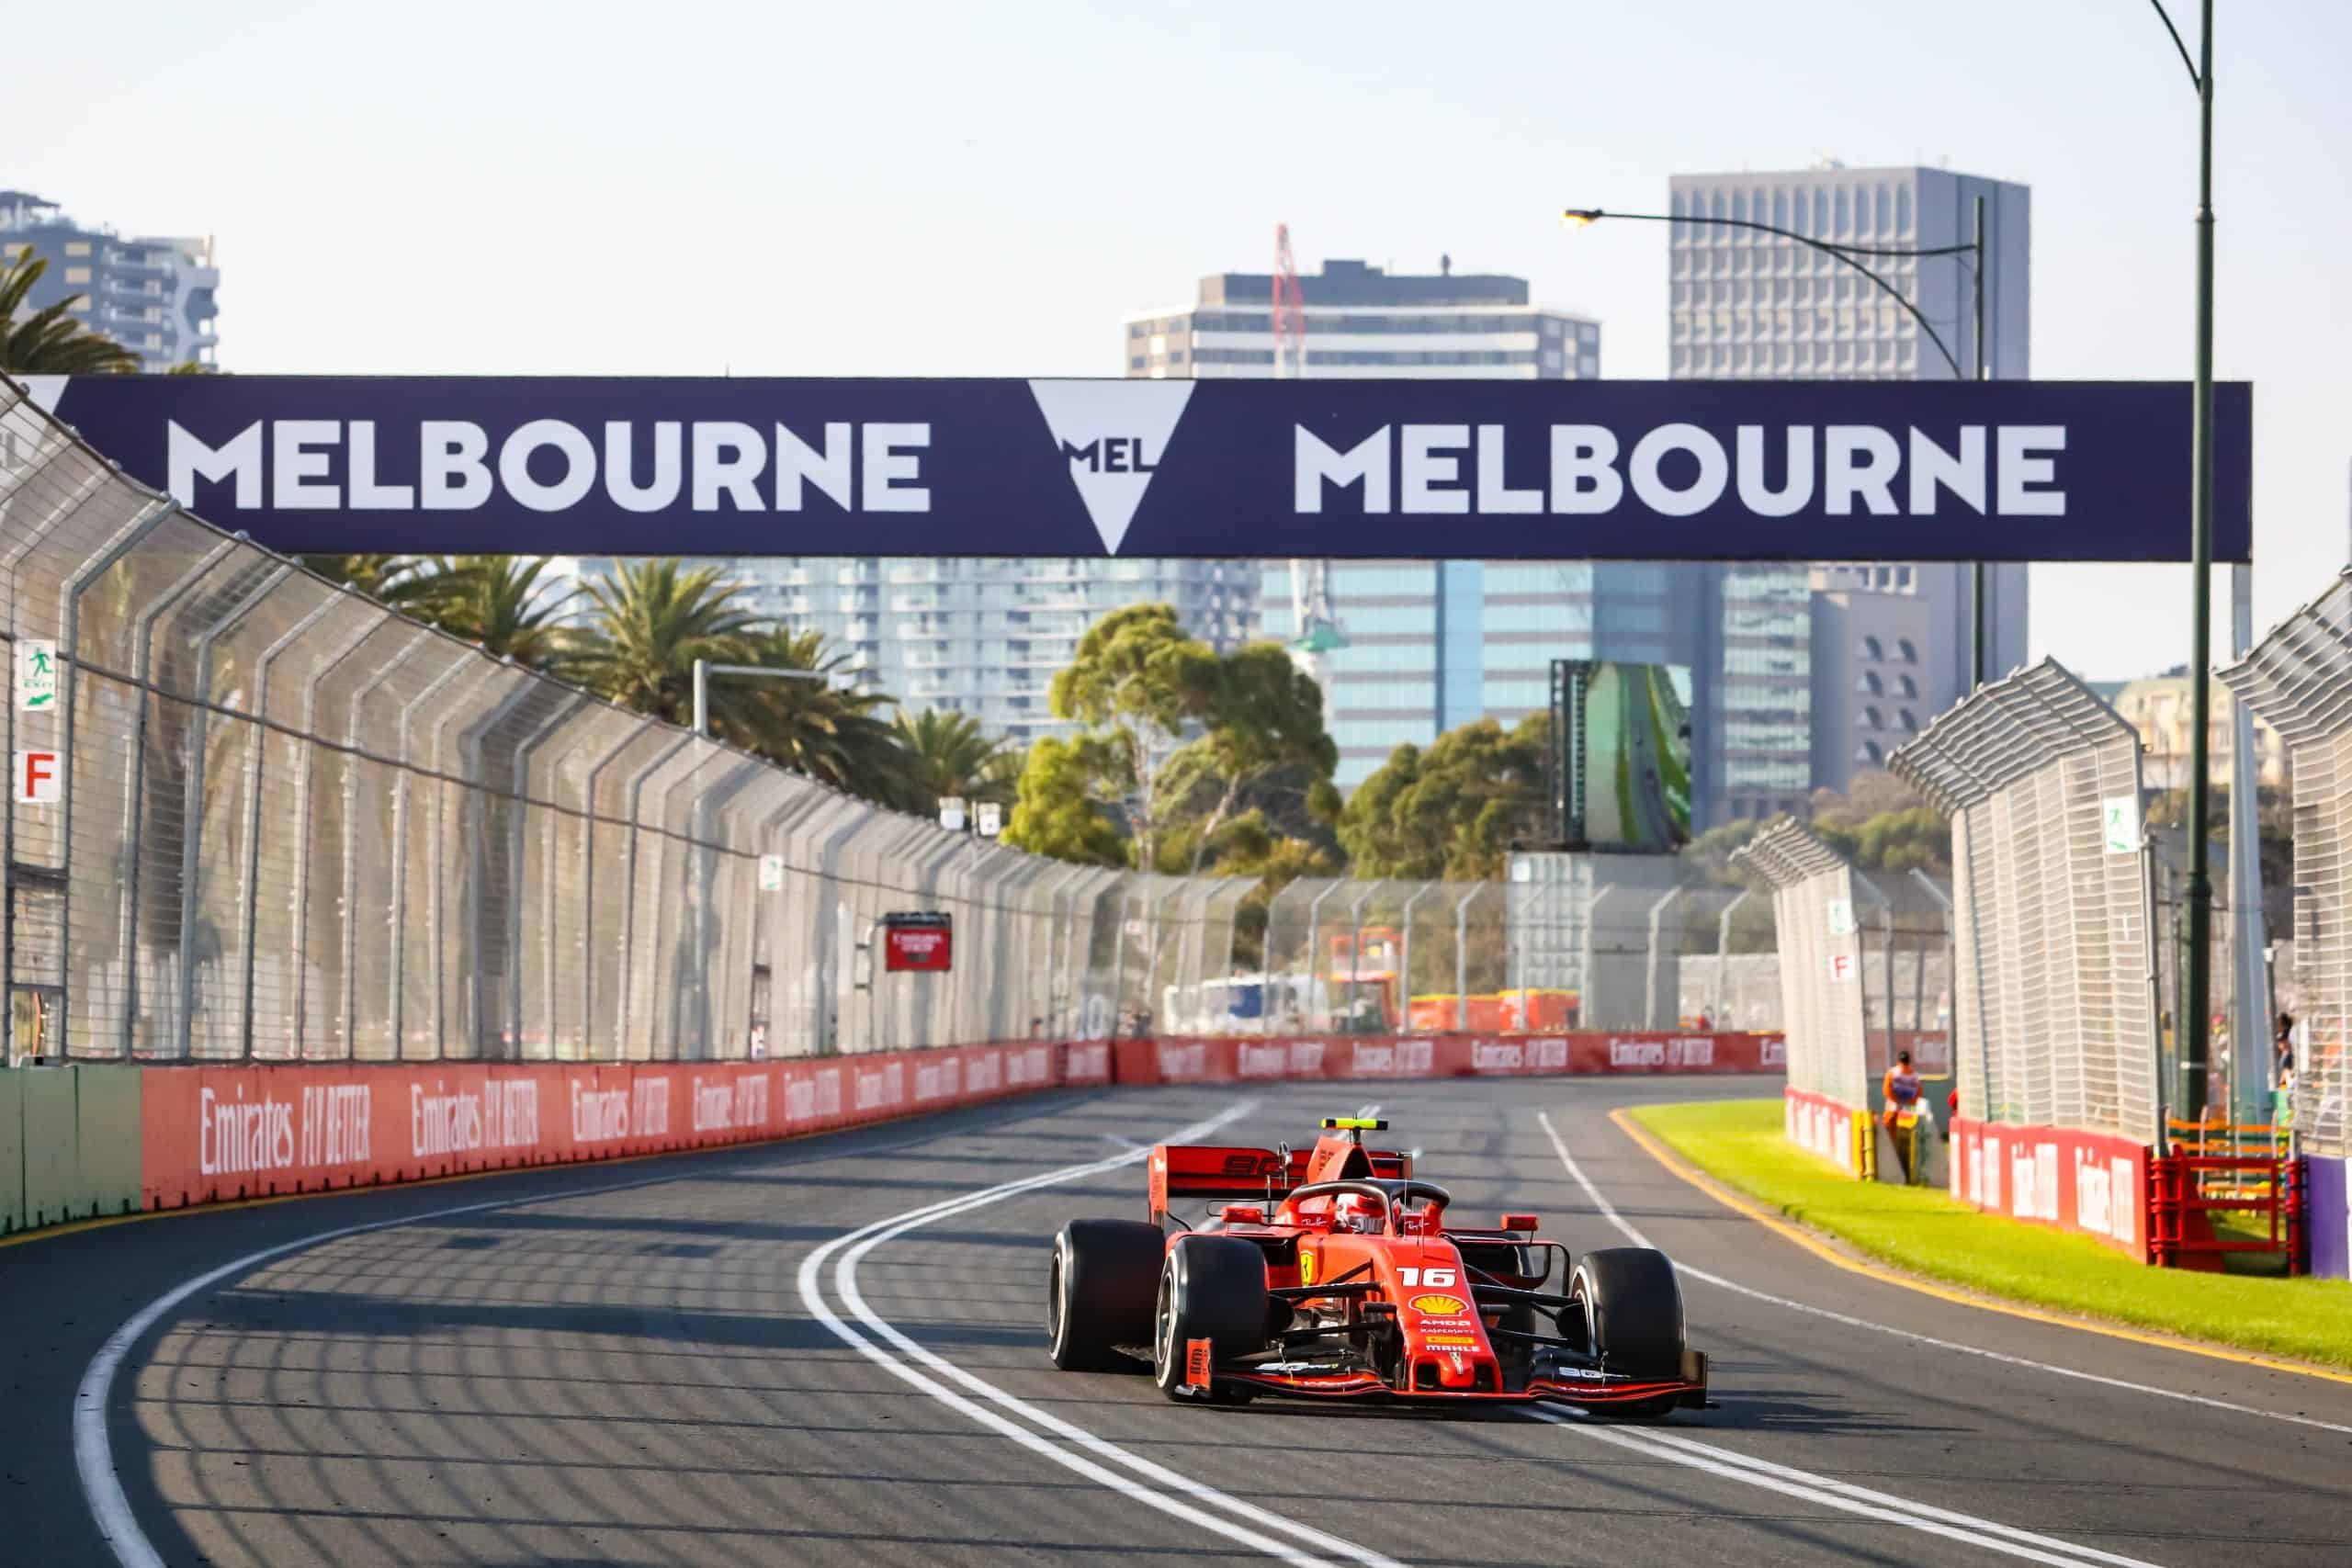 Formuła 1: Grand Prix Australii i Chin przełożone. Doszedł jeden wyścig